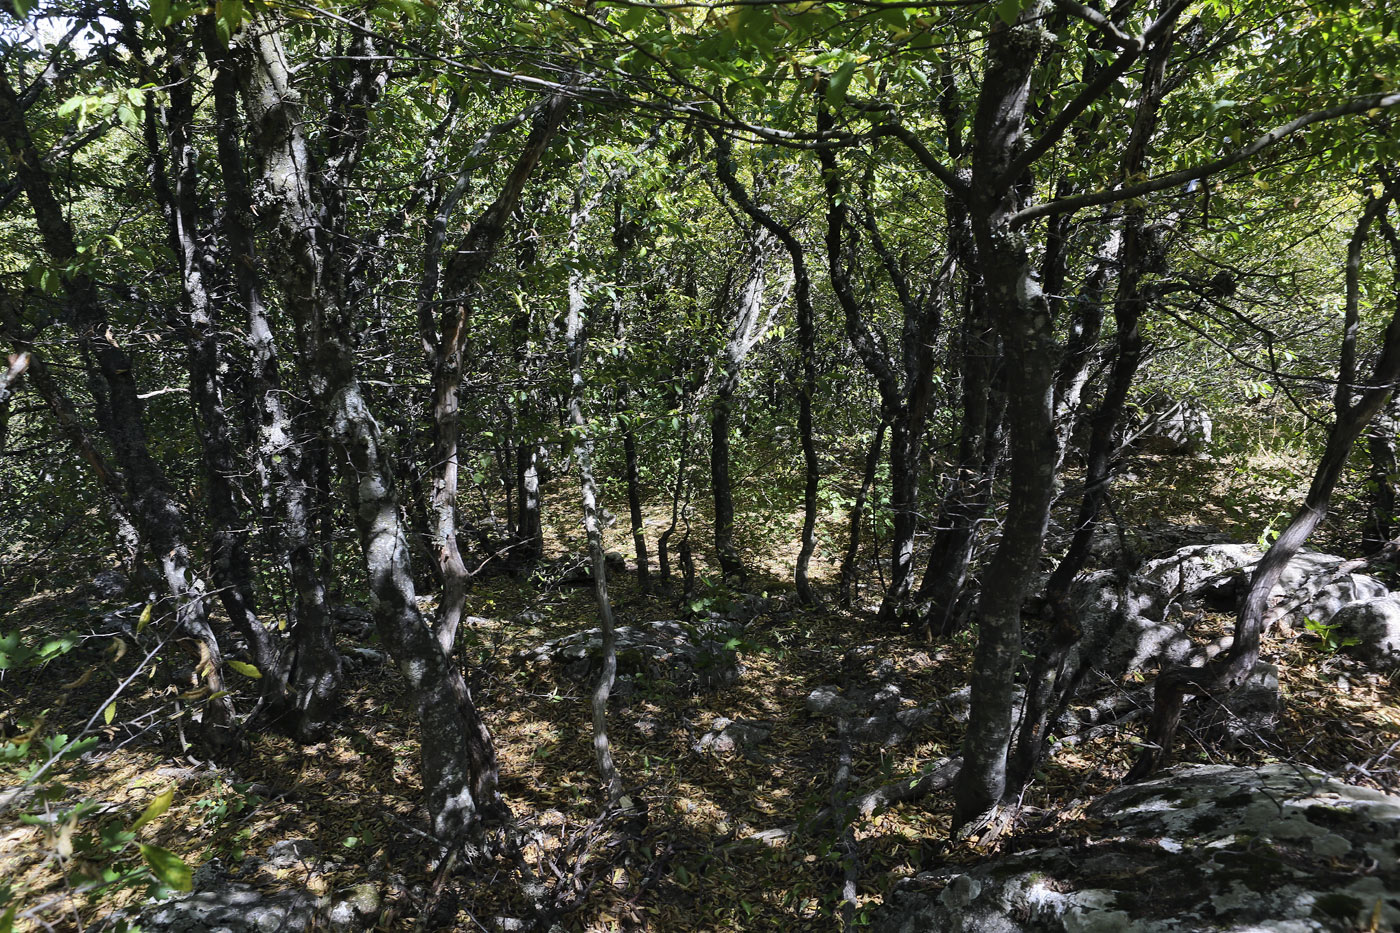 Ай-Петринская яйла, image of landscape/habitat.